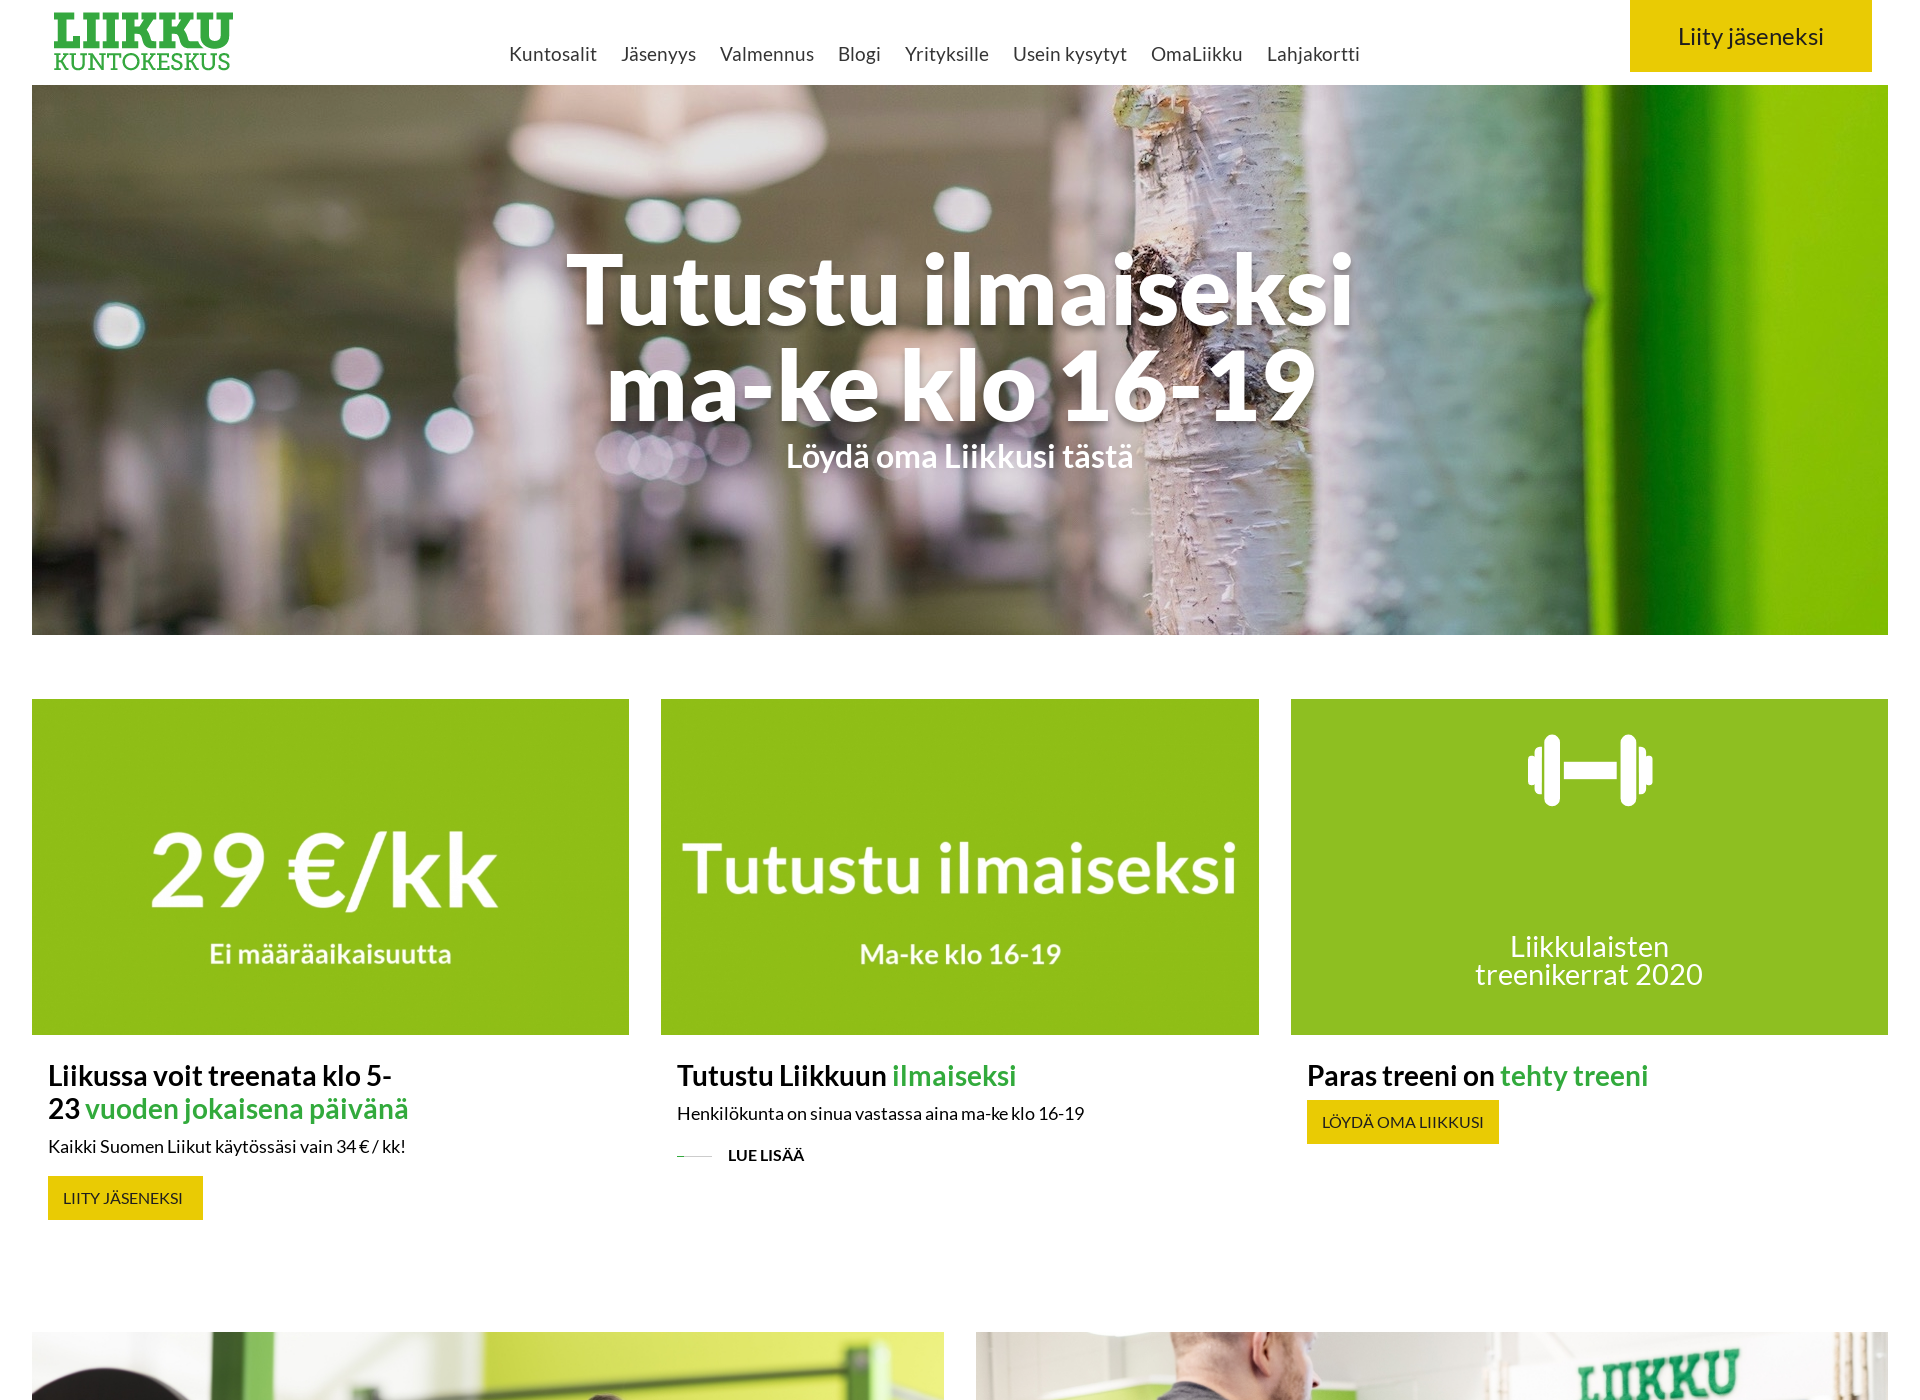 Näyttökuva liikkurusko.fi